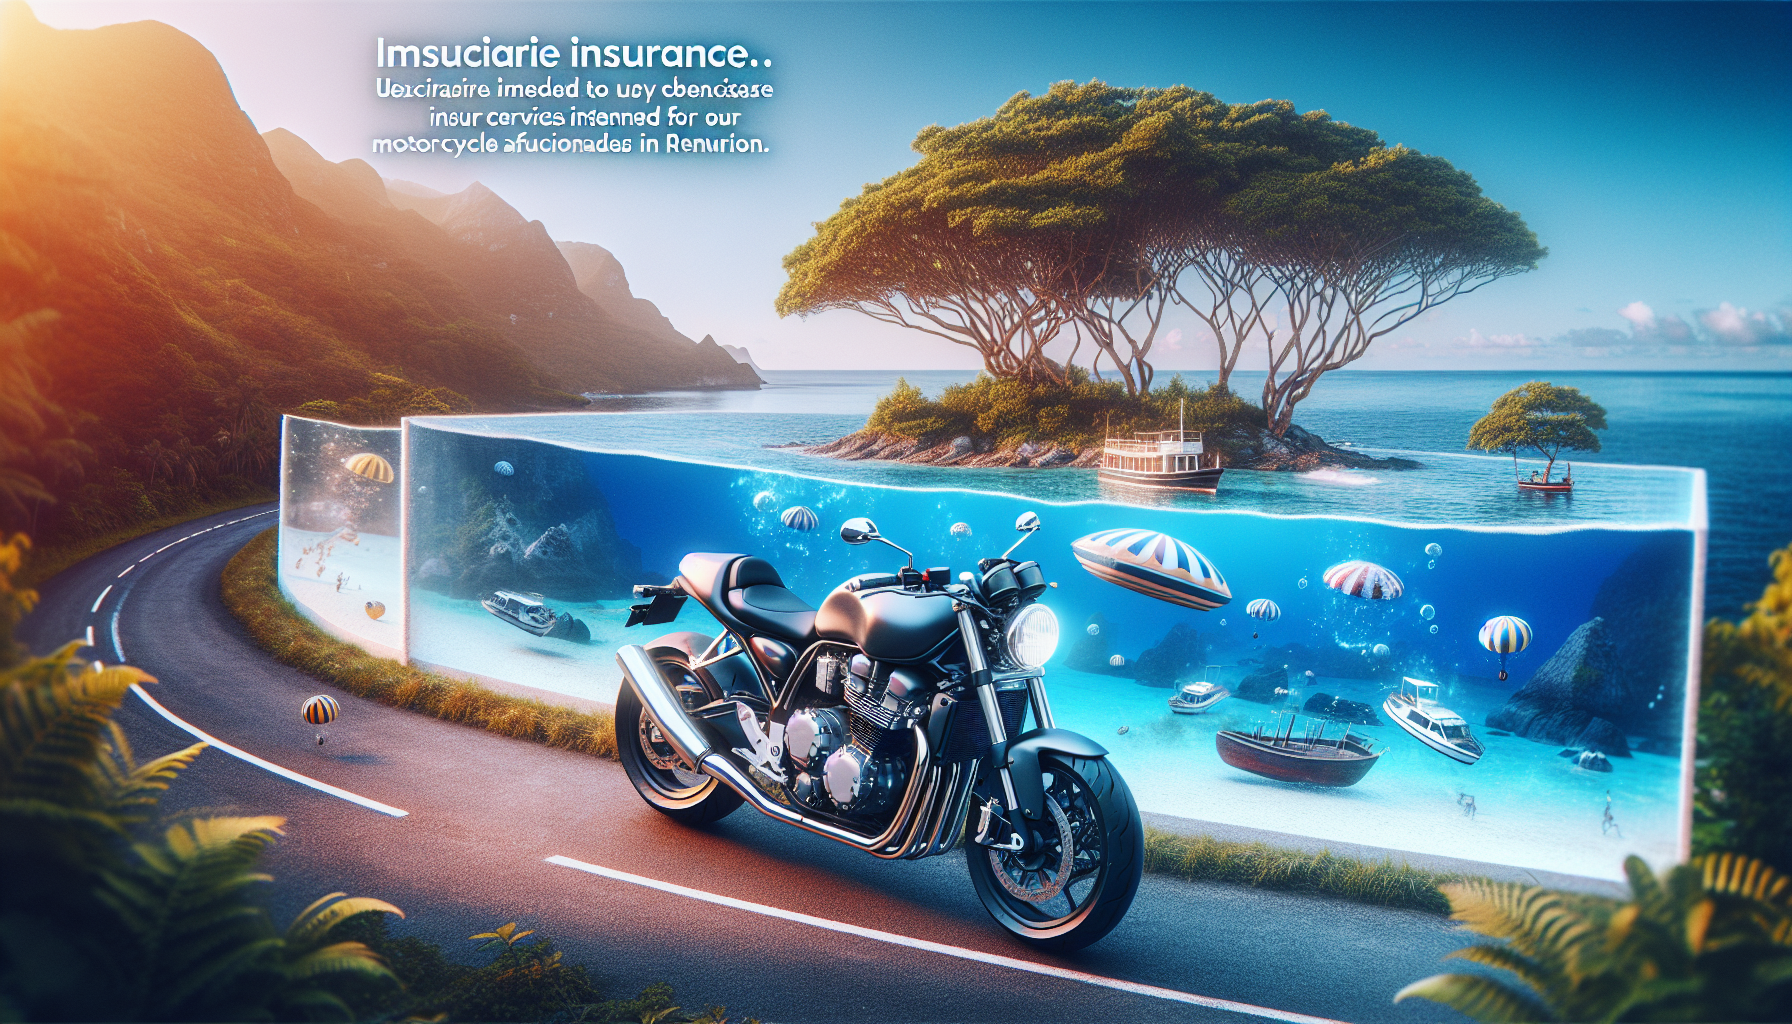 découvrez les divers services offerts par les compagnies d'assurance moto à la réunion pour assurer votre moto.